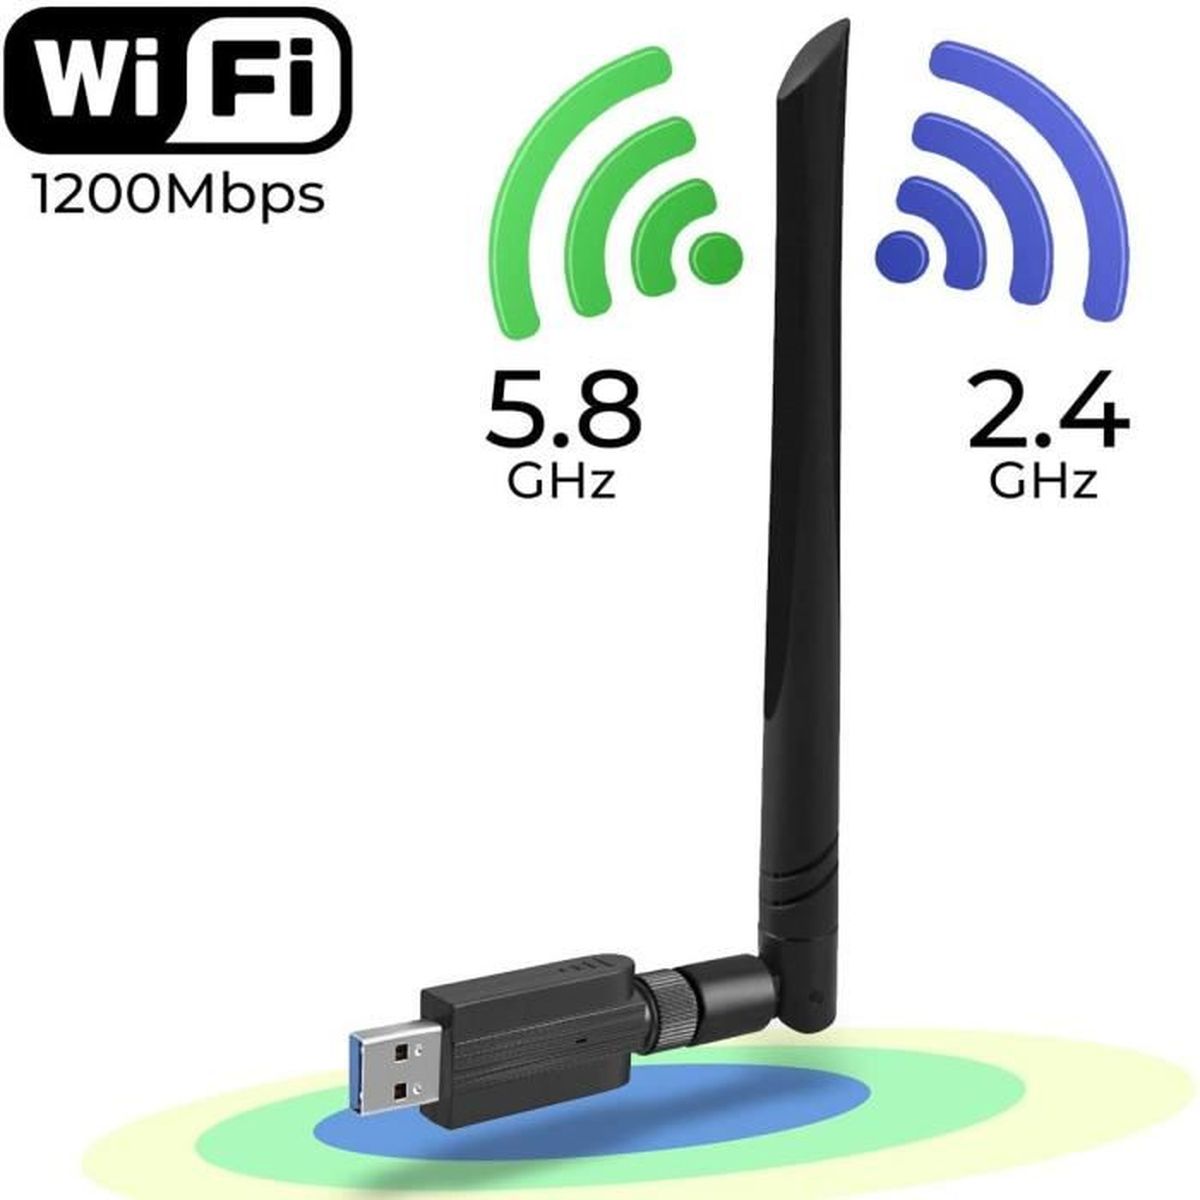 Carte SIM 4G, clé USB WiFi Hotspots, 4G LTE Portable, Plug and Play, clé de  Modem de routeur, Prise en Charge de la Carte mémoire d'extension pour  Windows/iOS/Linux(avec WiFi) en destockage et